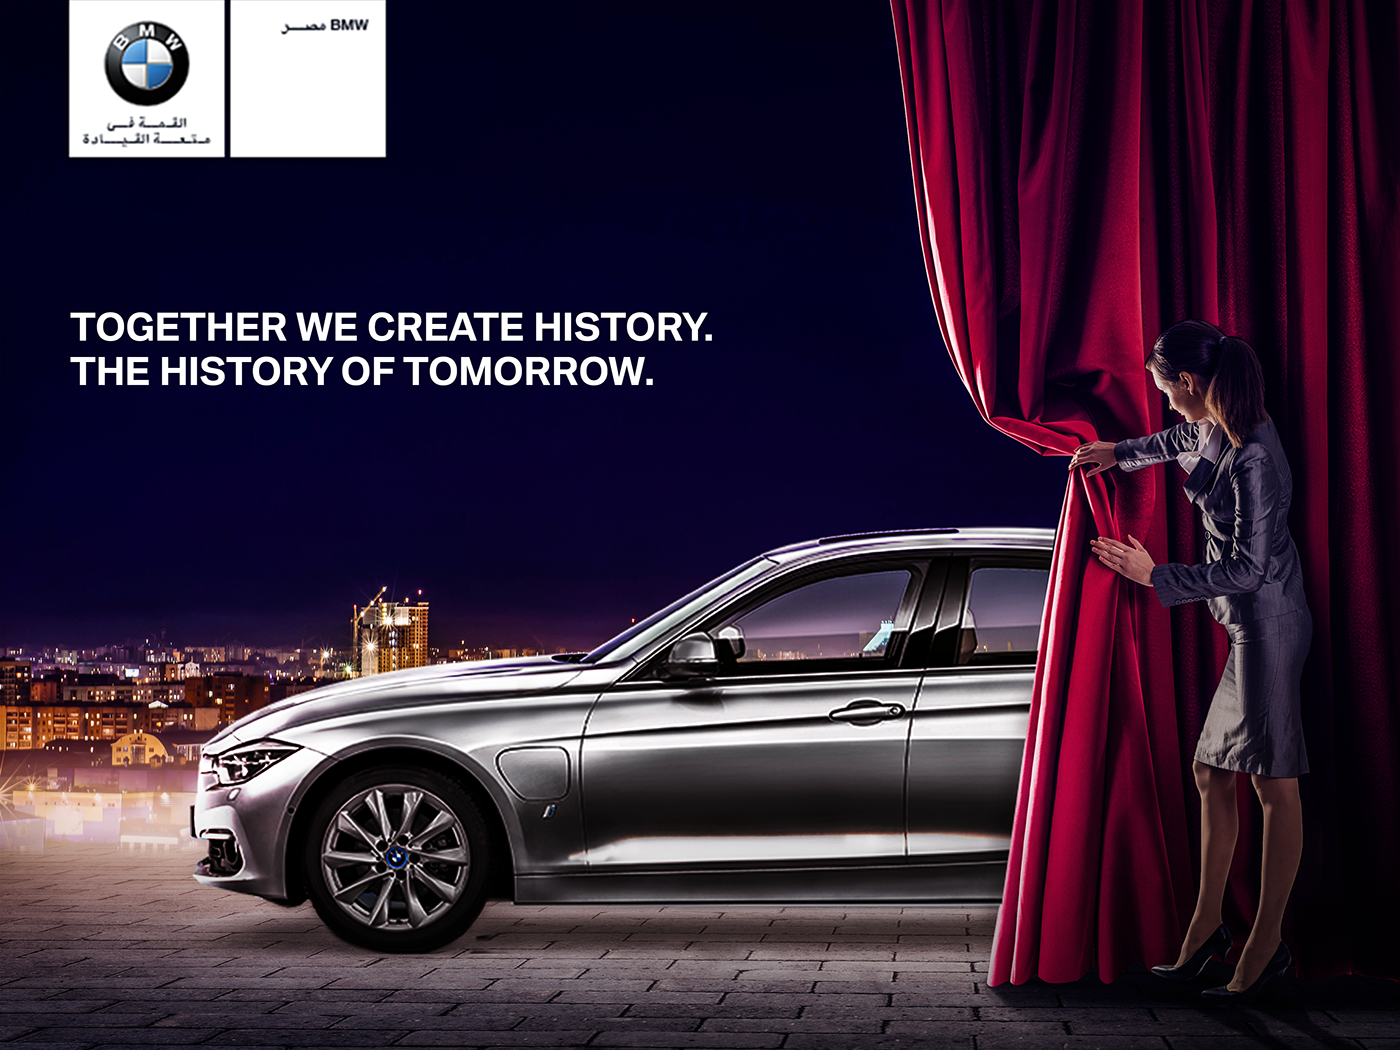 Реклама на машине. Печатная реклама автомобилей. Слоганы машин. Рекламный плакат BMW.